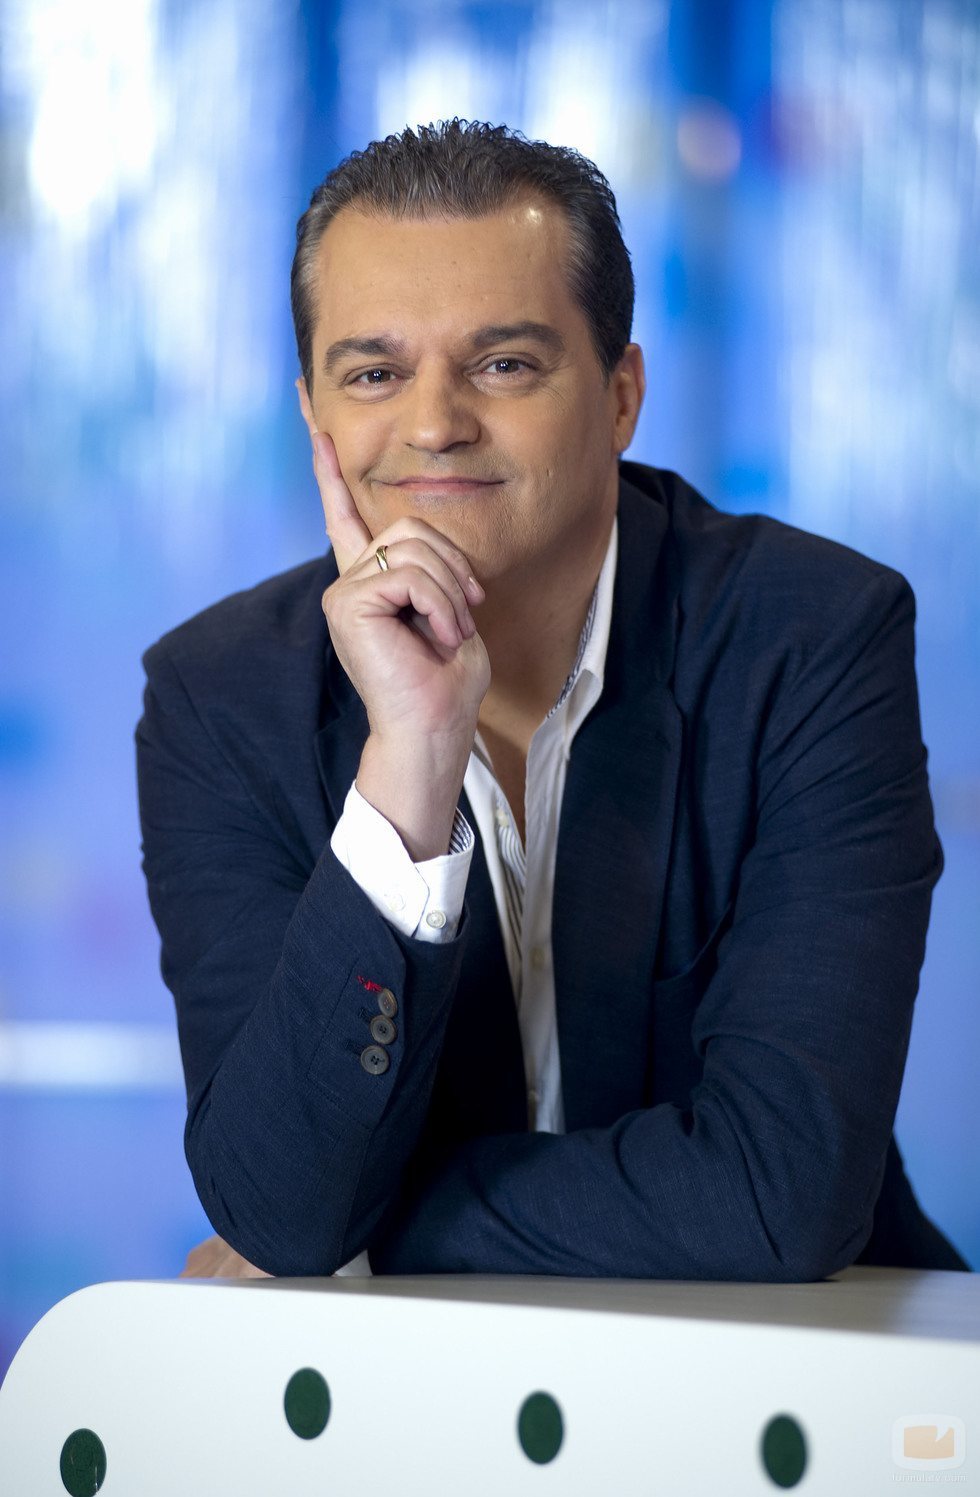 El presentador, Ramón García, sonríe en su programa